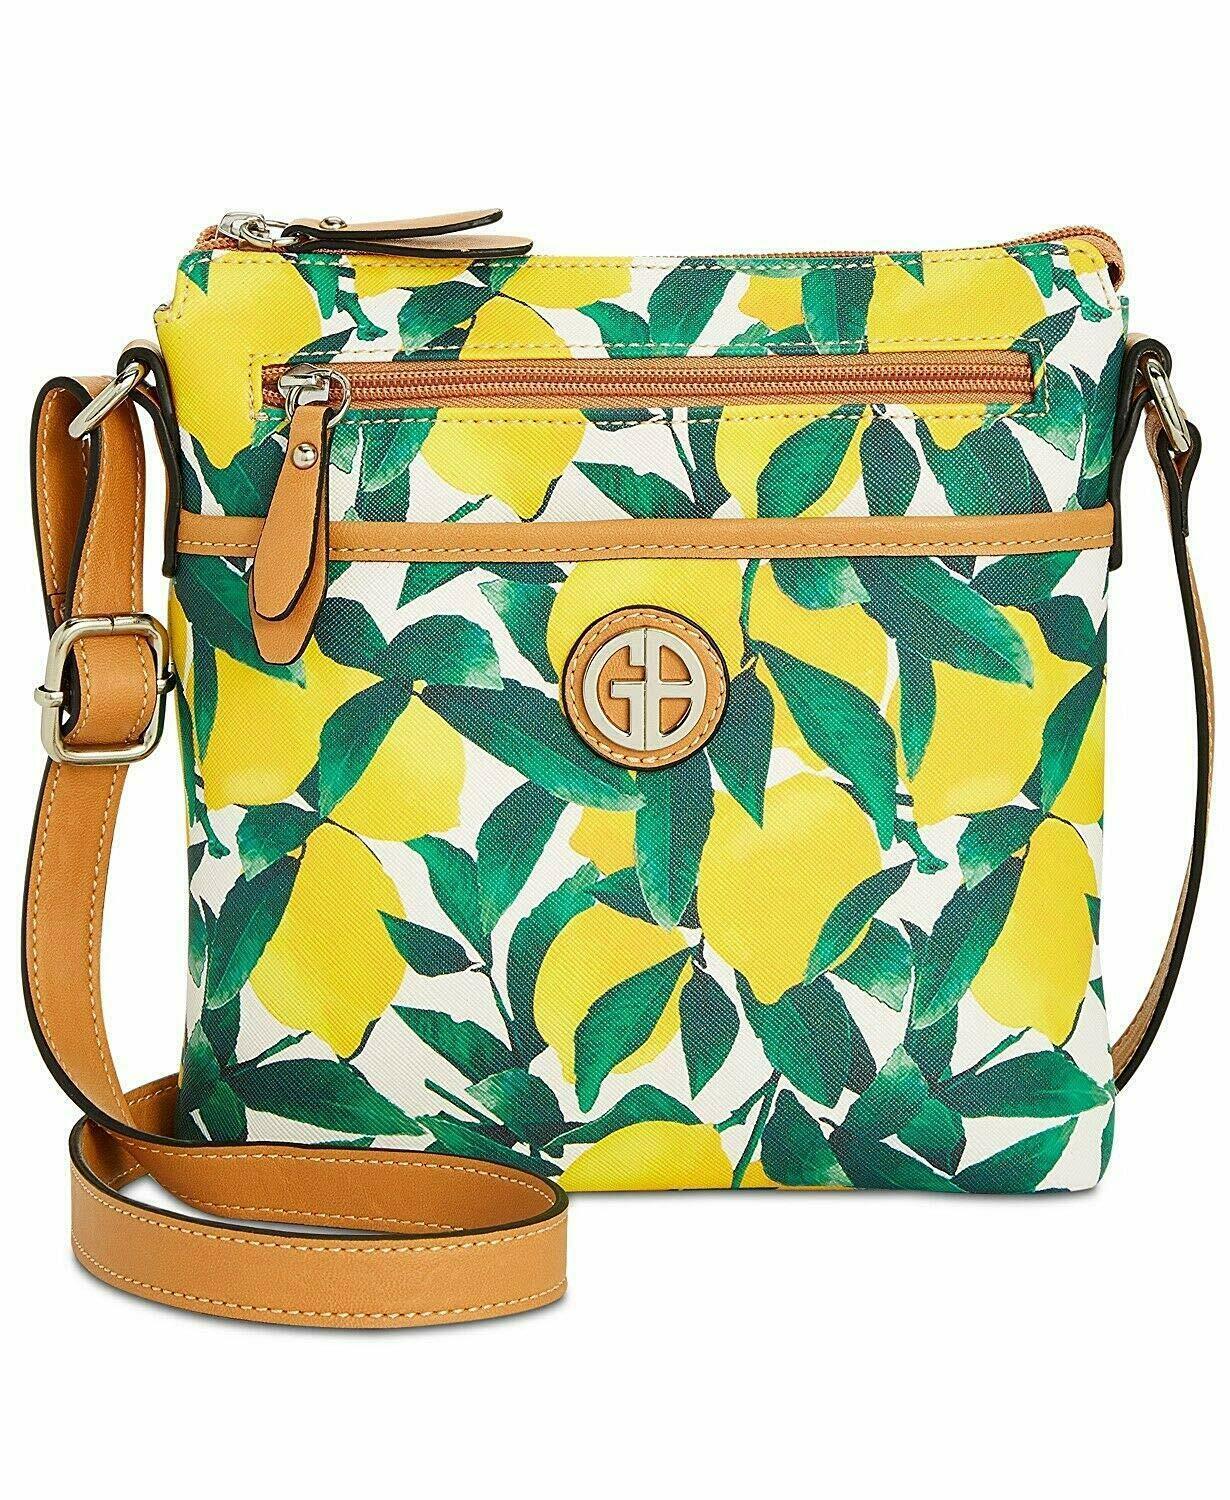 Giani Bernini Saffiano Crossbody - Lemon Tree - Women's Bags & Handbags